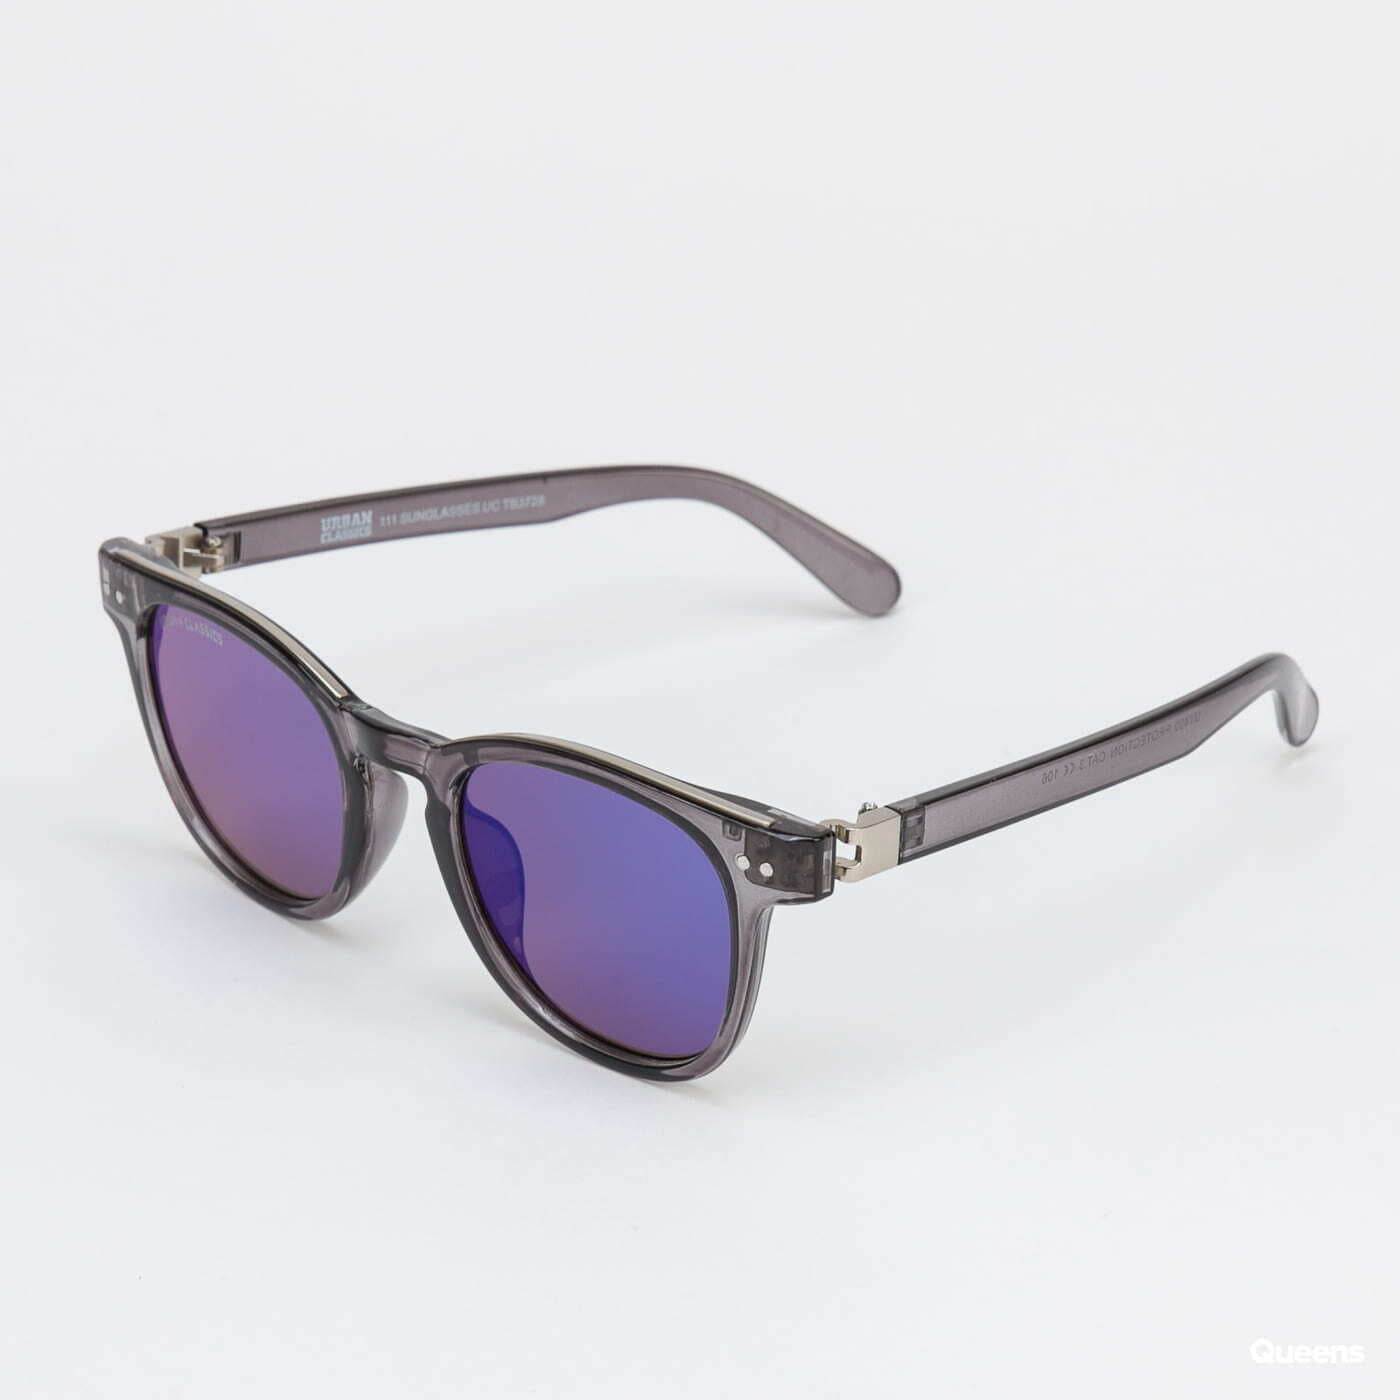 Sunglasses Grey/ Classics 111 | UC Silver Urban Queens Sunglasses